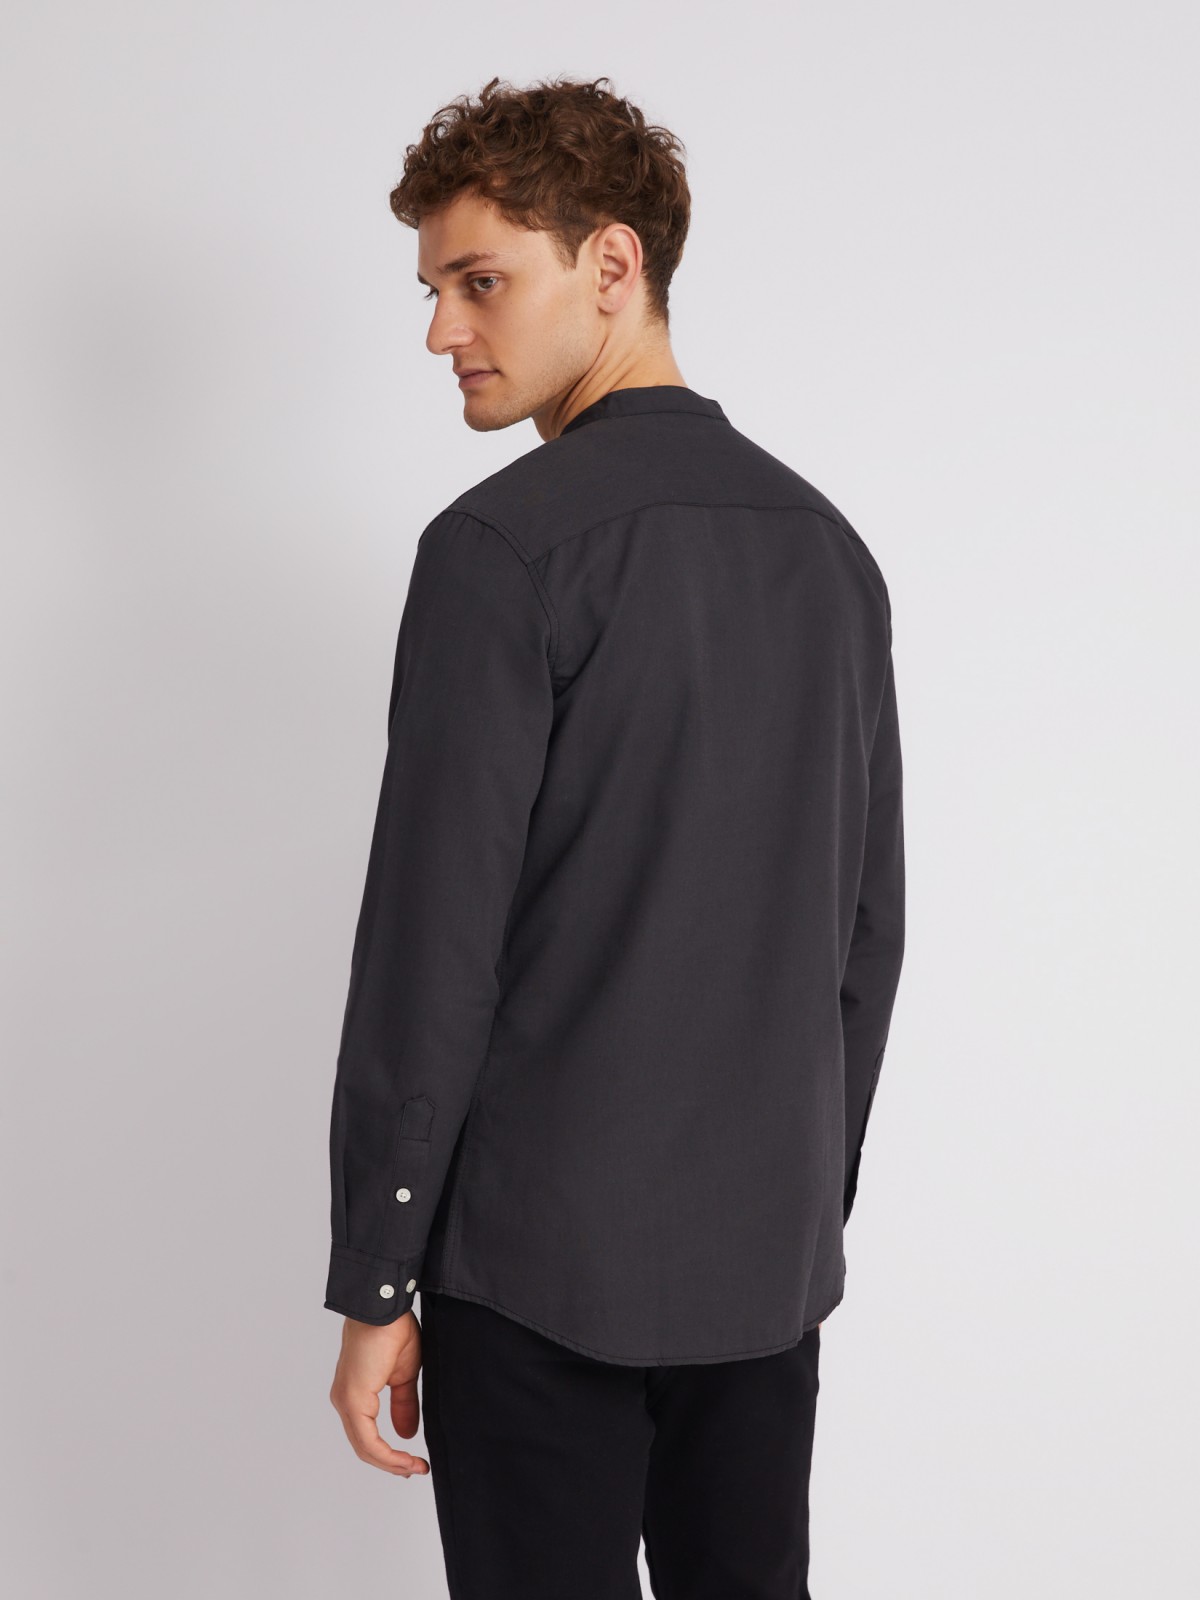 Офисная рубашка с воротником-стойкой и длинным рукавом zolla 21232214R043, цвет черный, размер S - фото 6